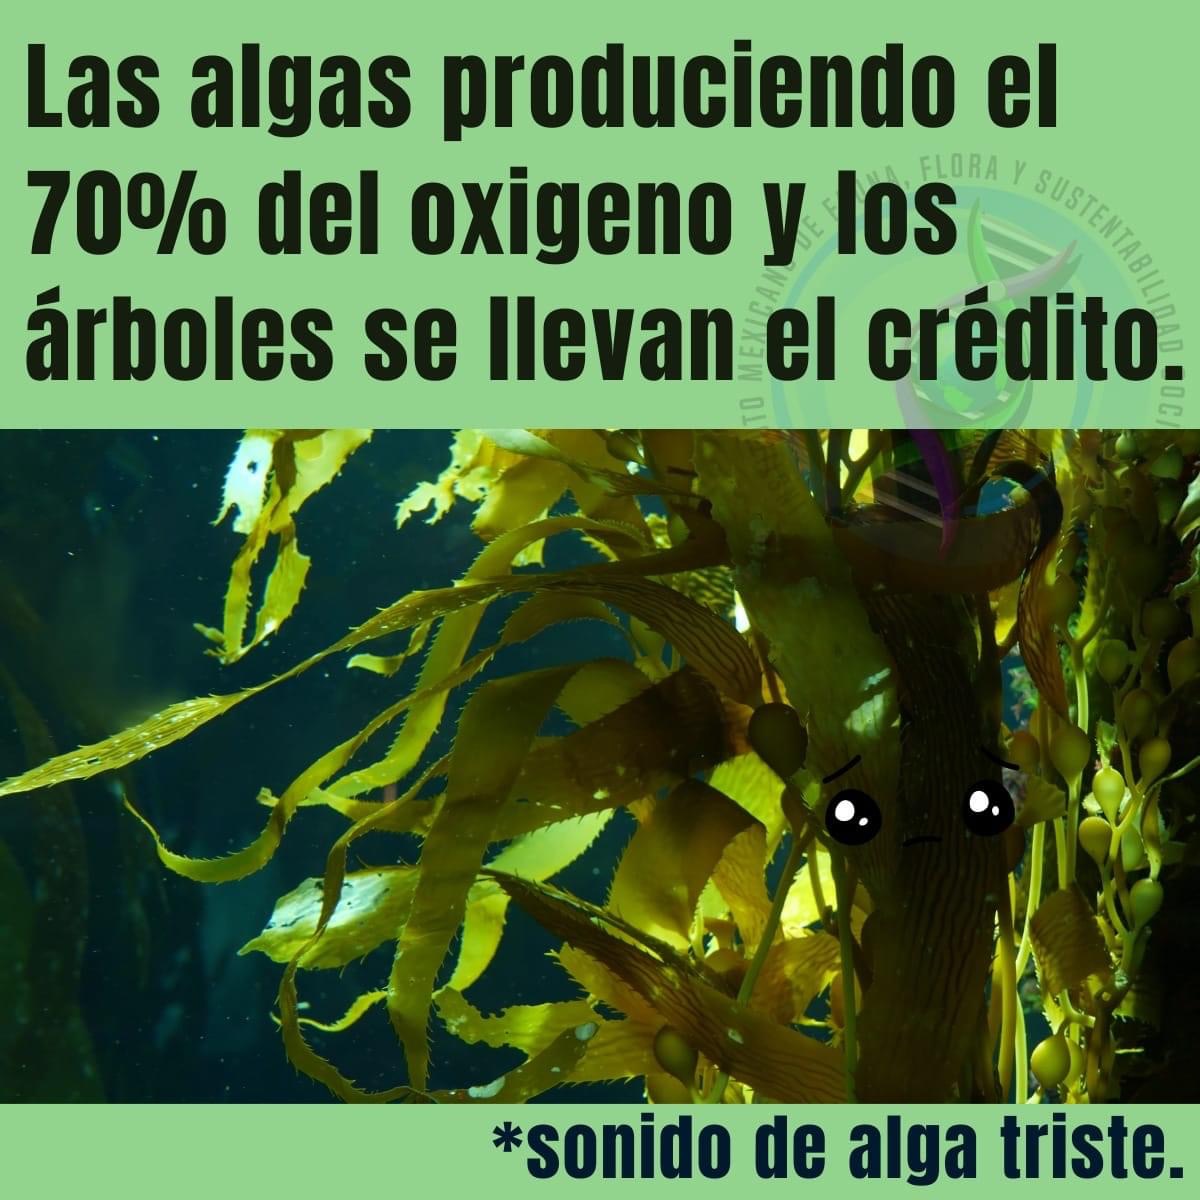 😬

#vidasilvestre #bosquesmarinos #sustentable